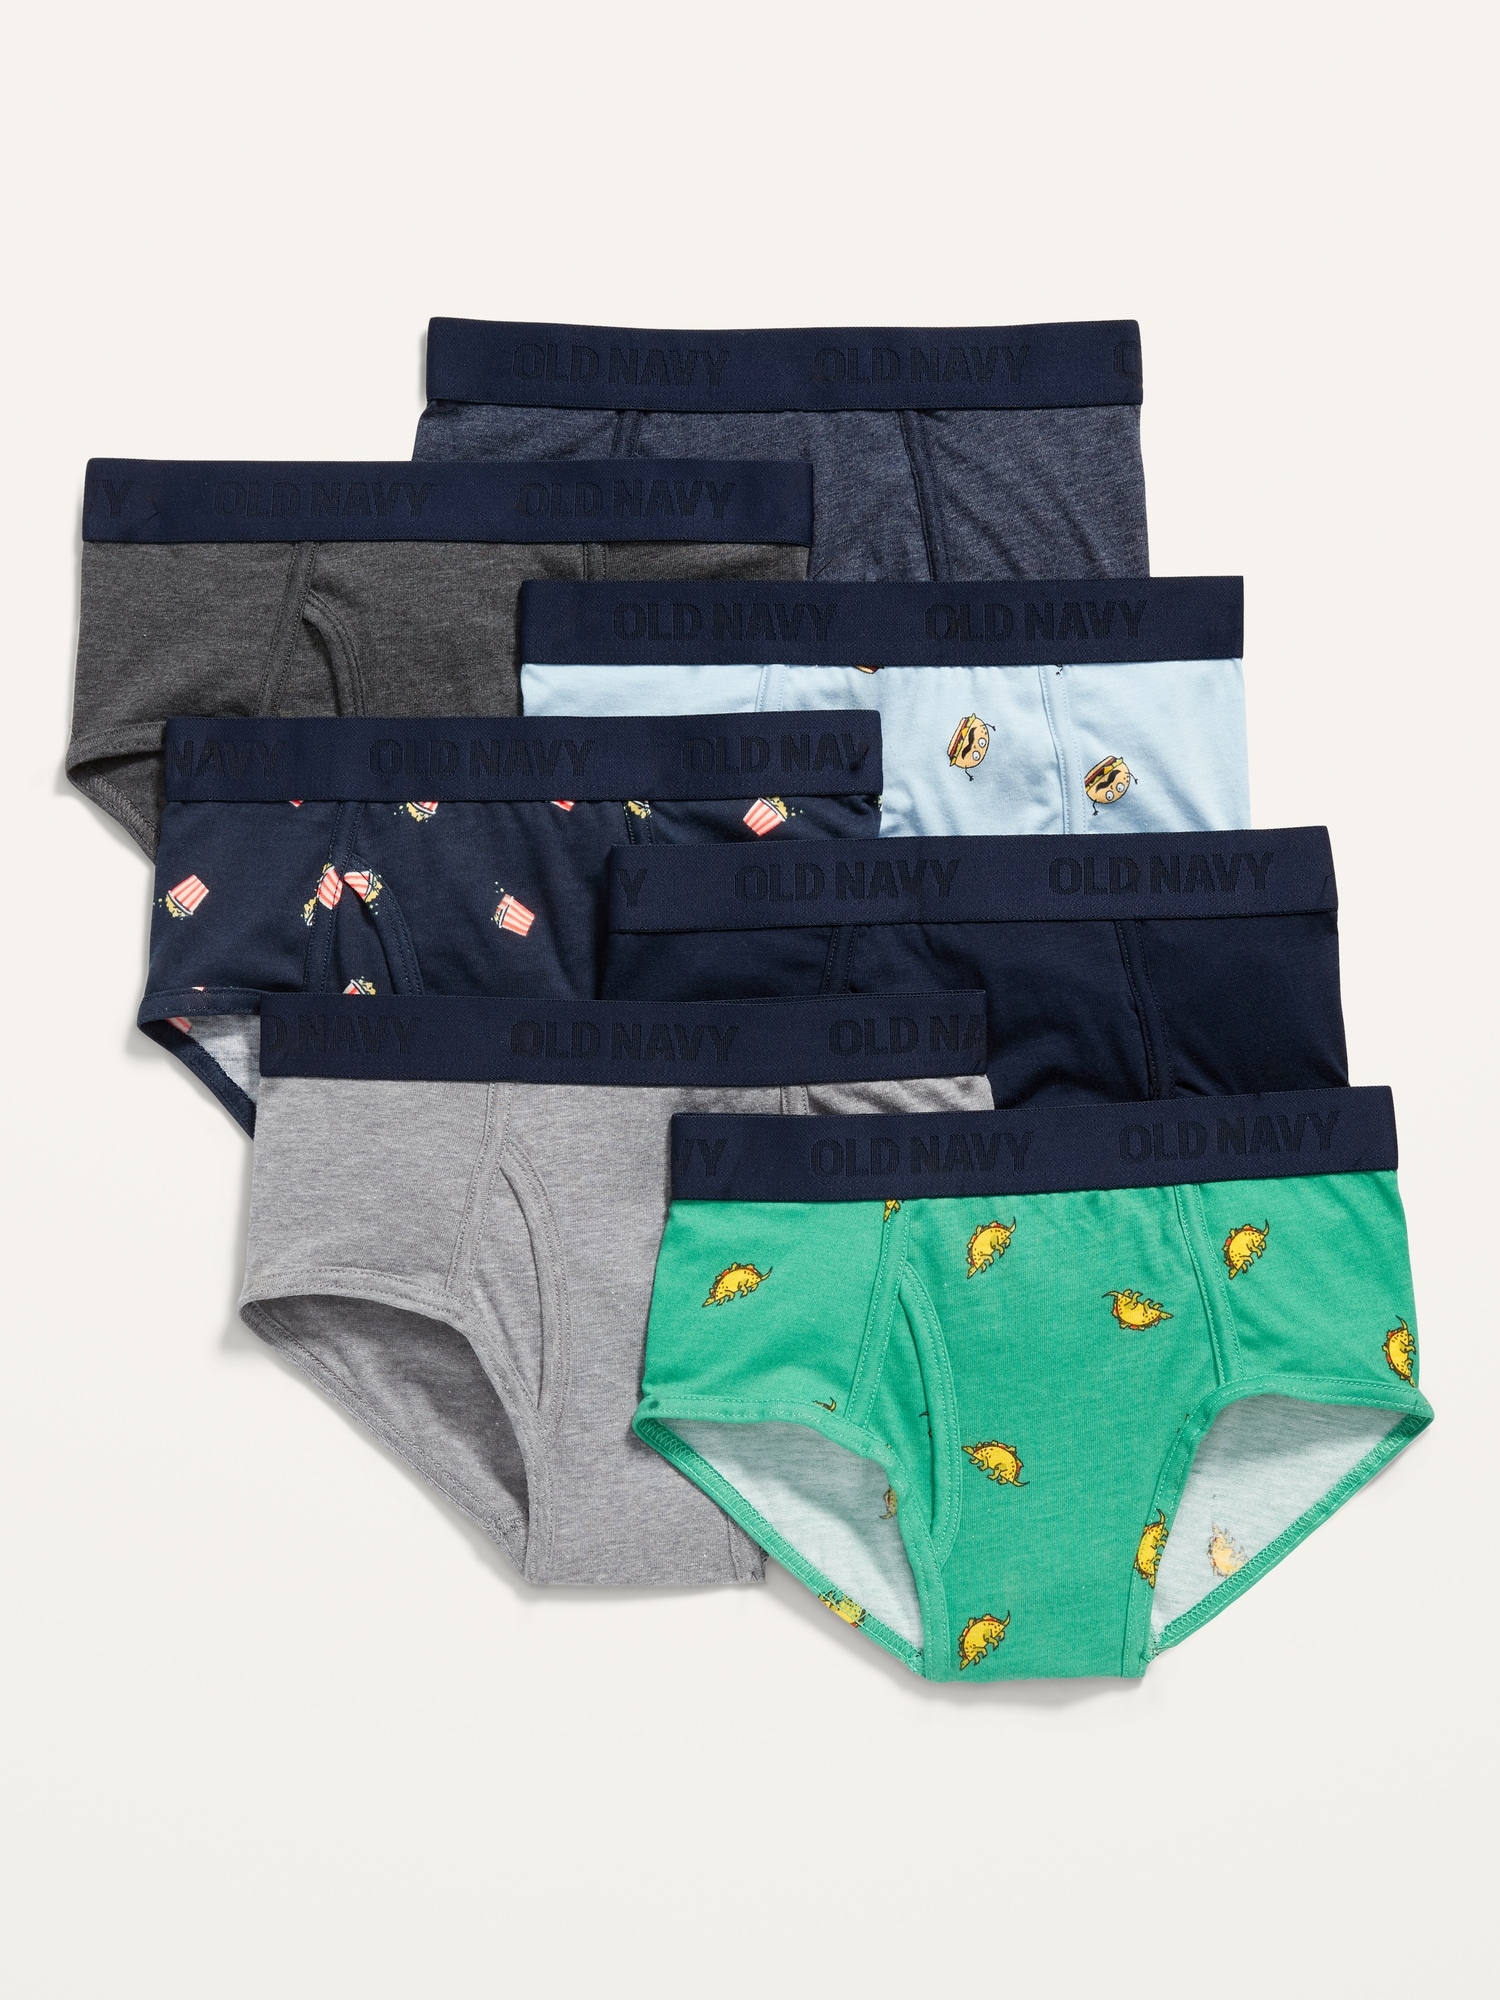 Boys Underwear with Designs